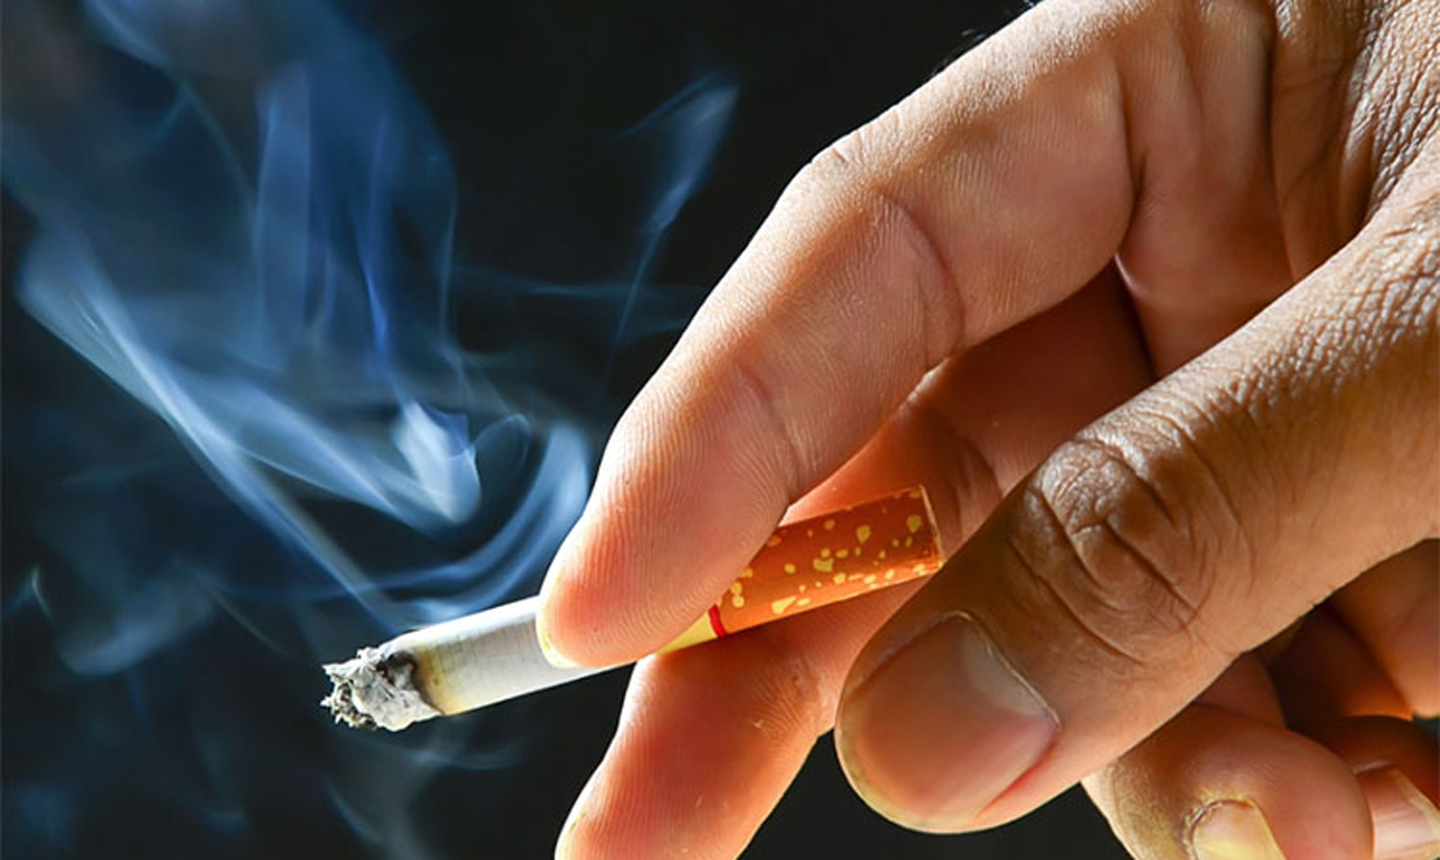   Những người thường xuyên hút thuốc lá có trí nhớ kém hơn  